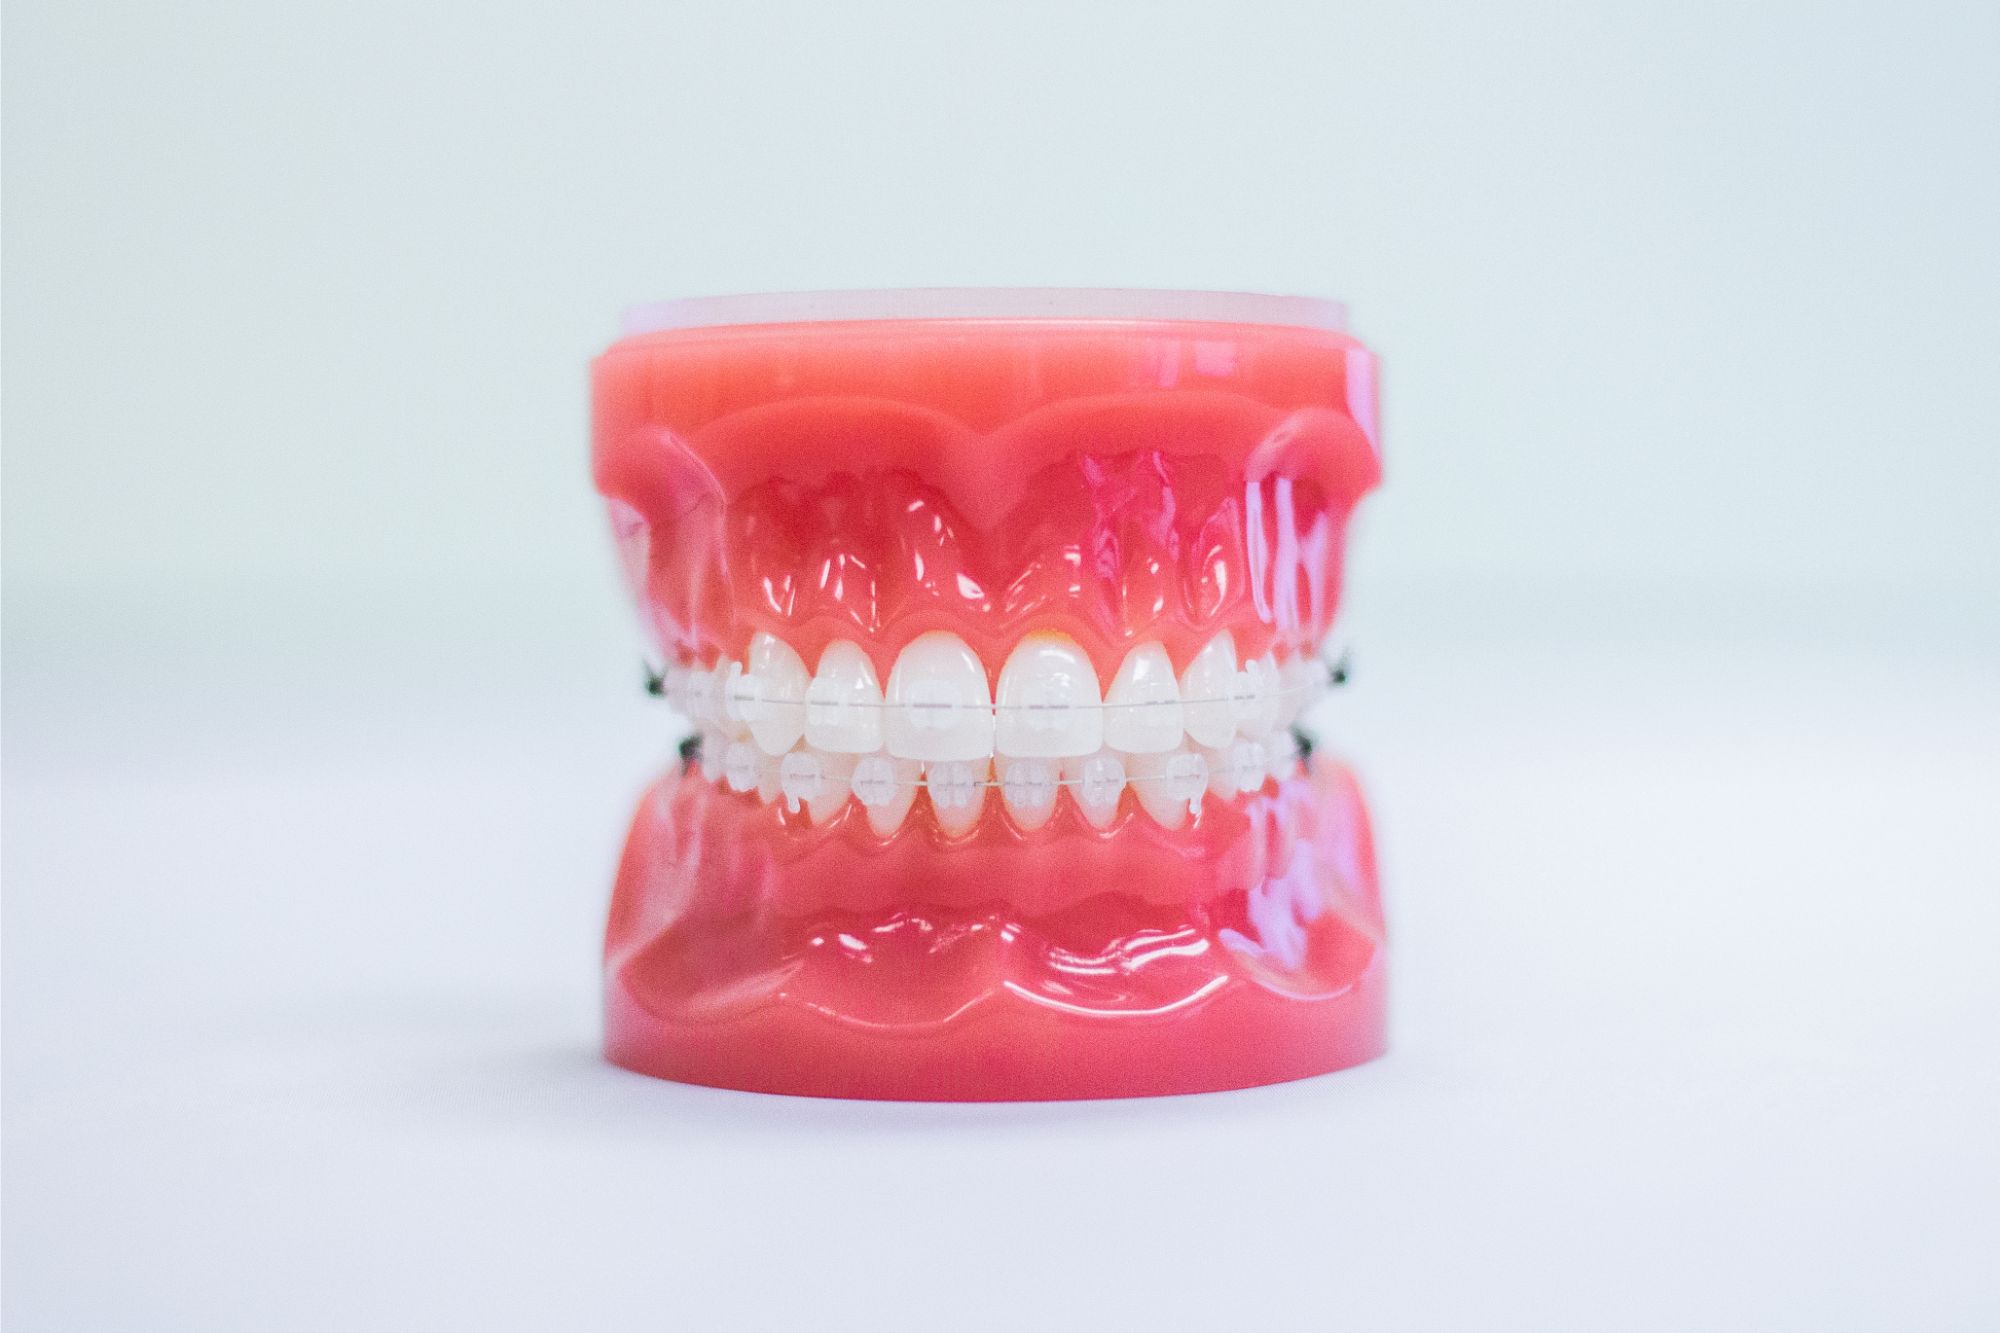 Orthodontics - Ceramic Braces